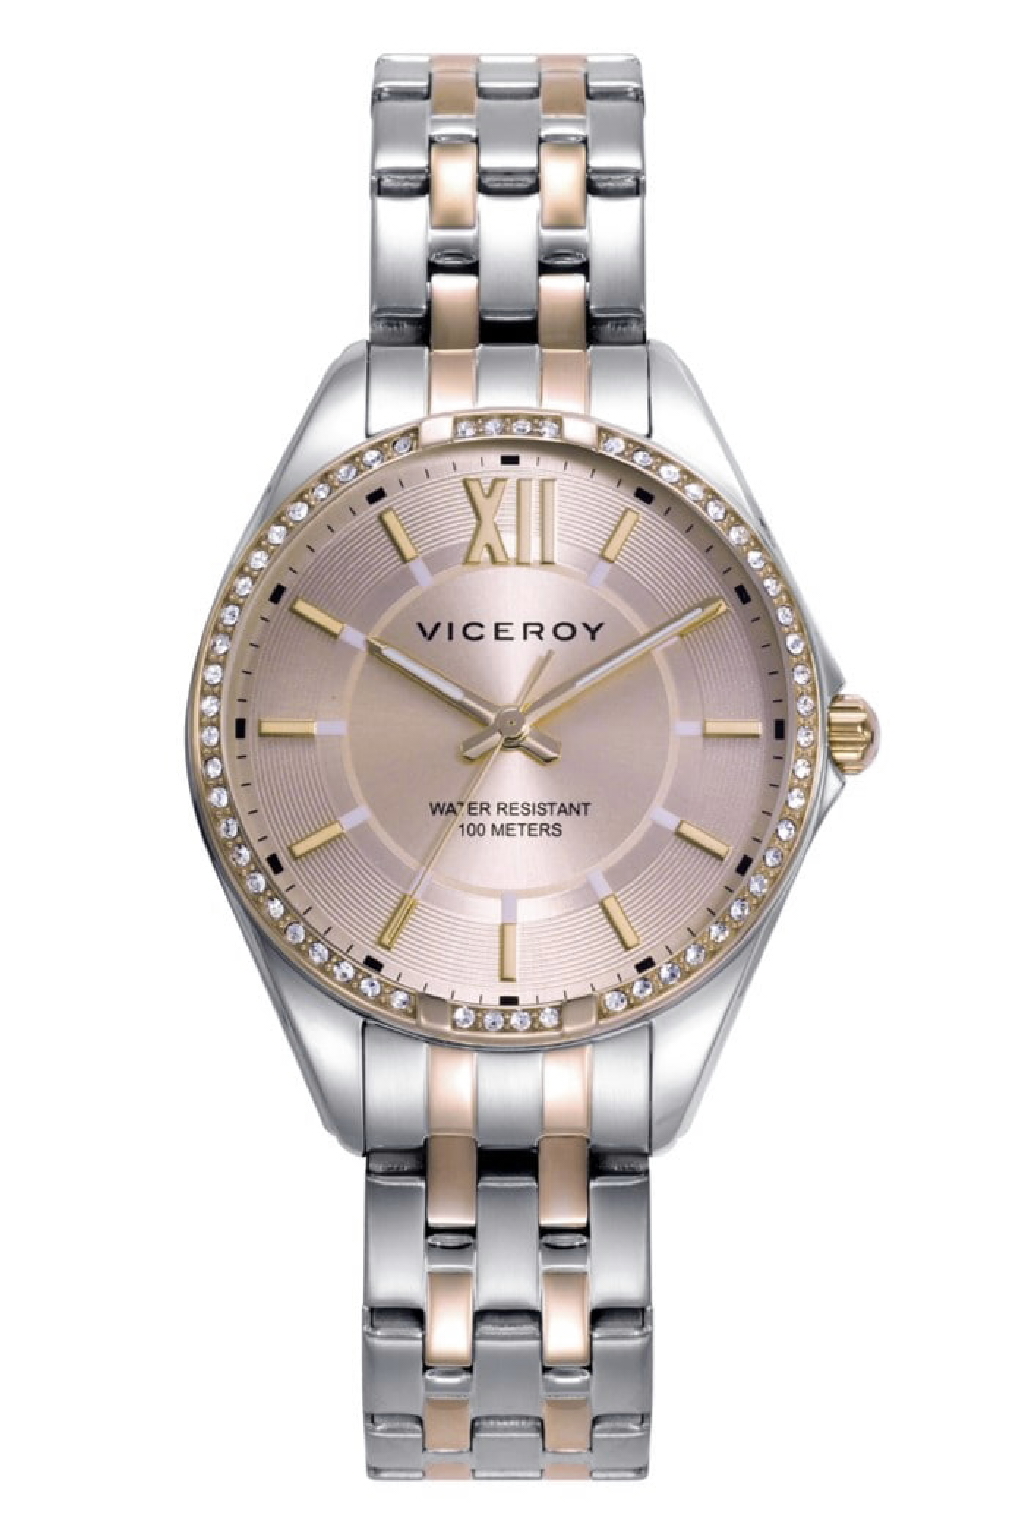 Reloj Viceroy hombre acero bicolor oro rosa colección Dress - 46819-17